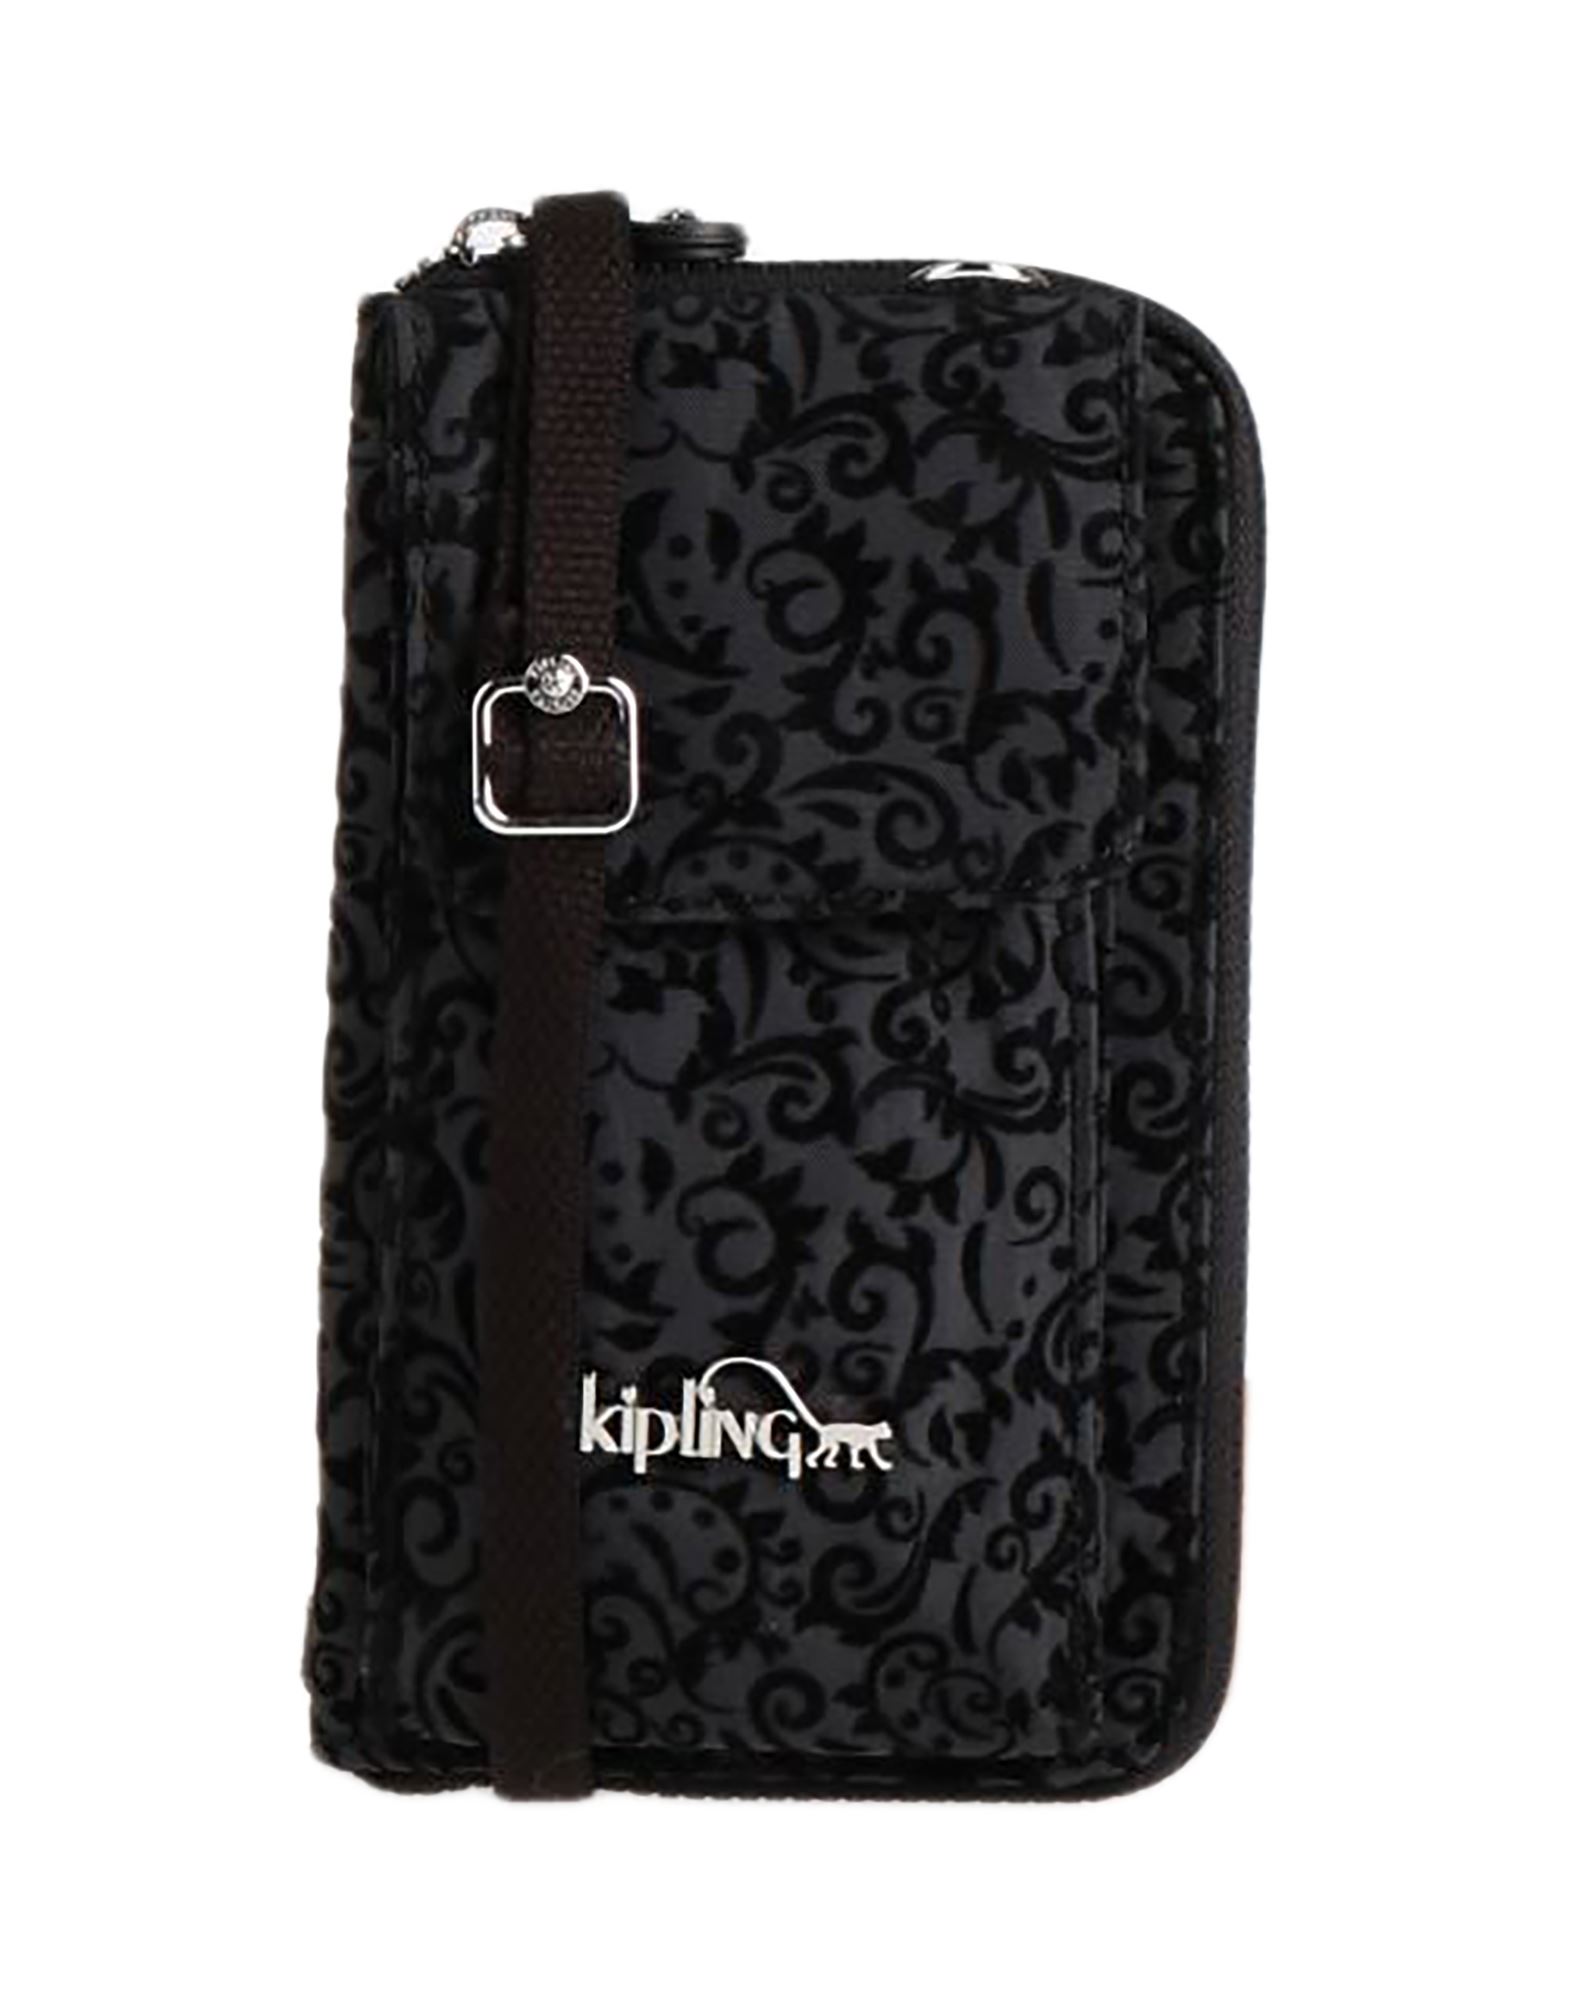 Kipling Handbags In Steel Grey